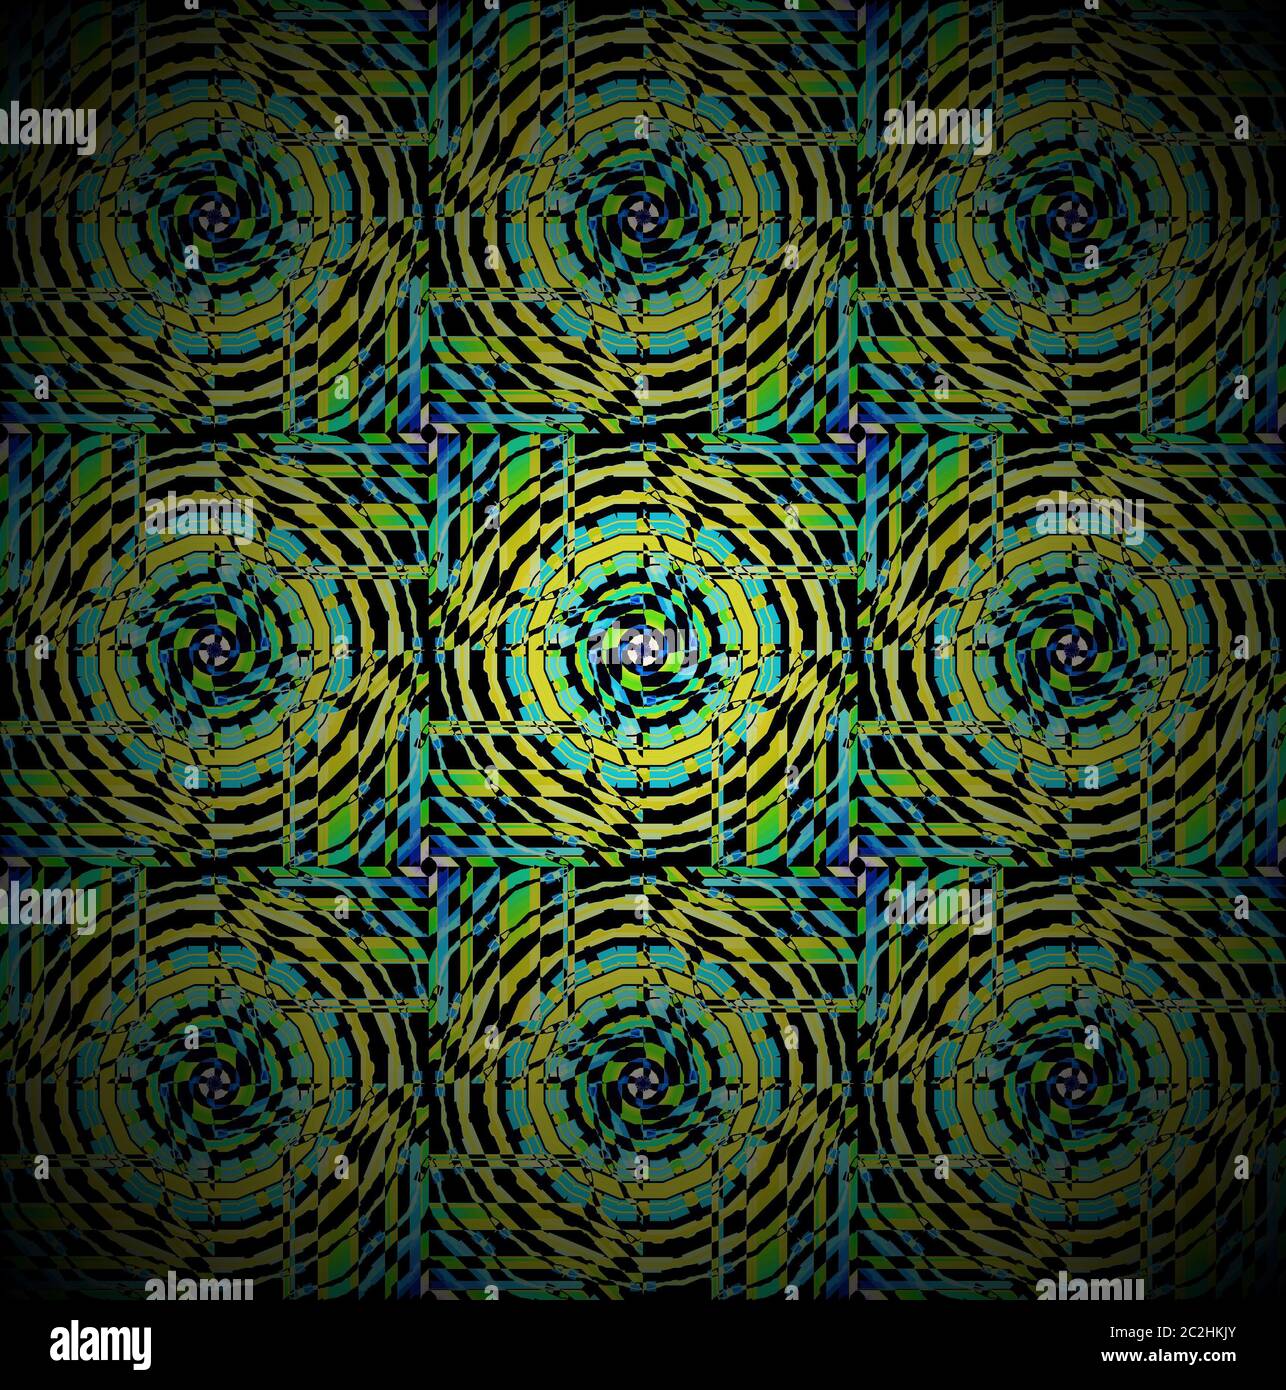 Círculos concéntricos regulares patrón negro turquesa azul verde brillante Foto de stock